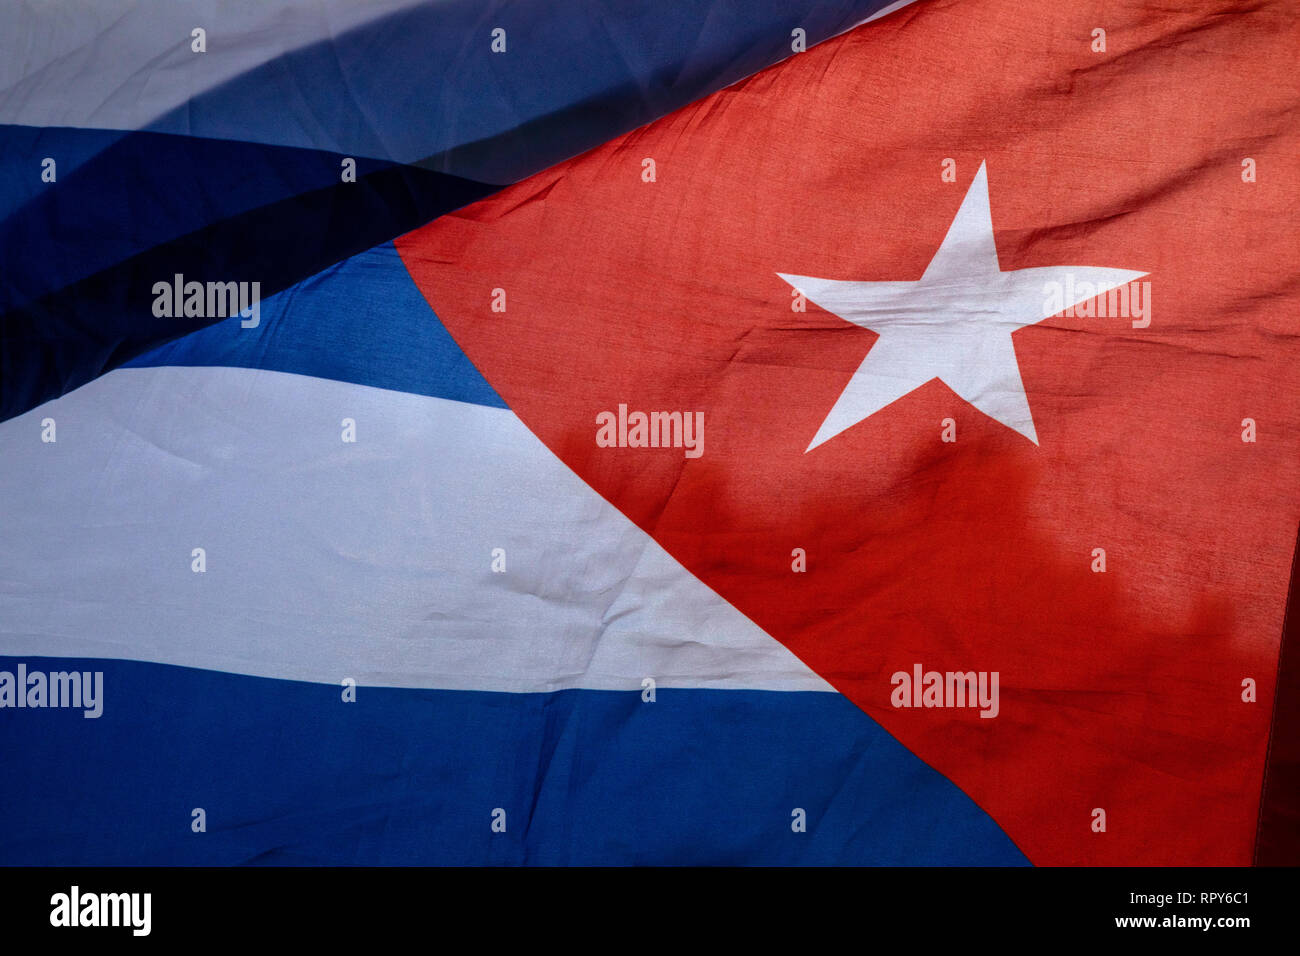 Brandissant le drapeau national de la République de Cuba Banque D'Images